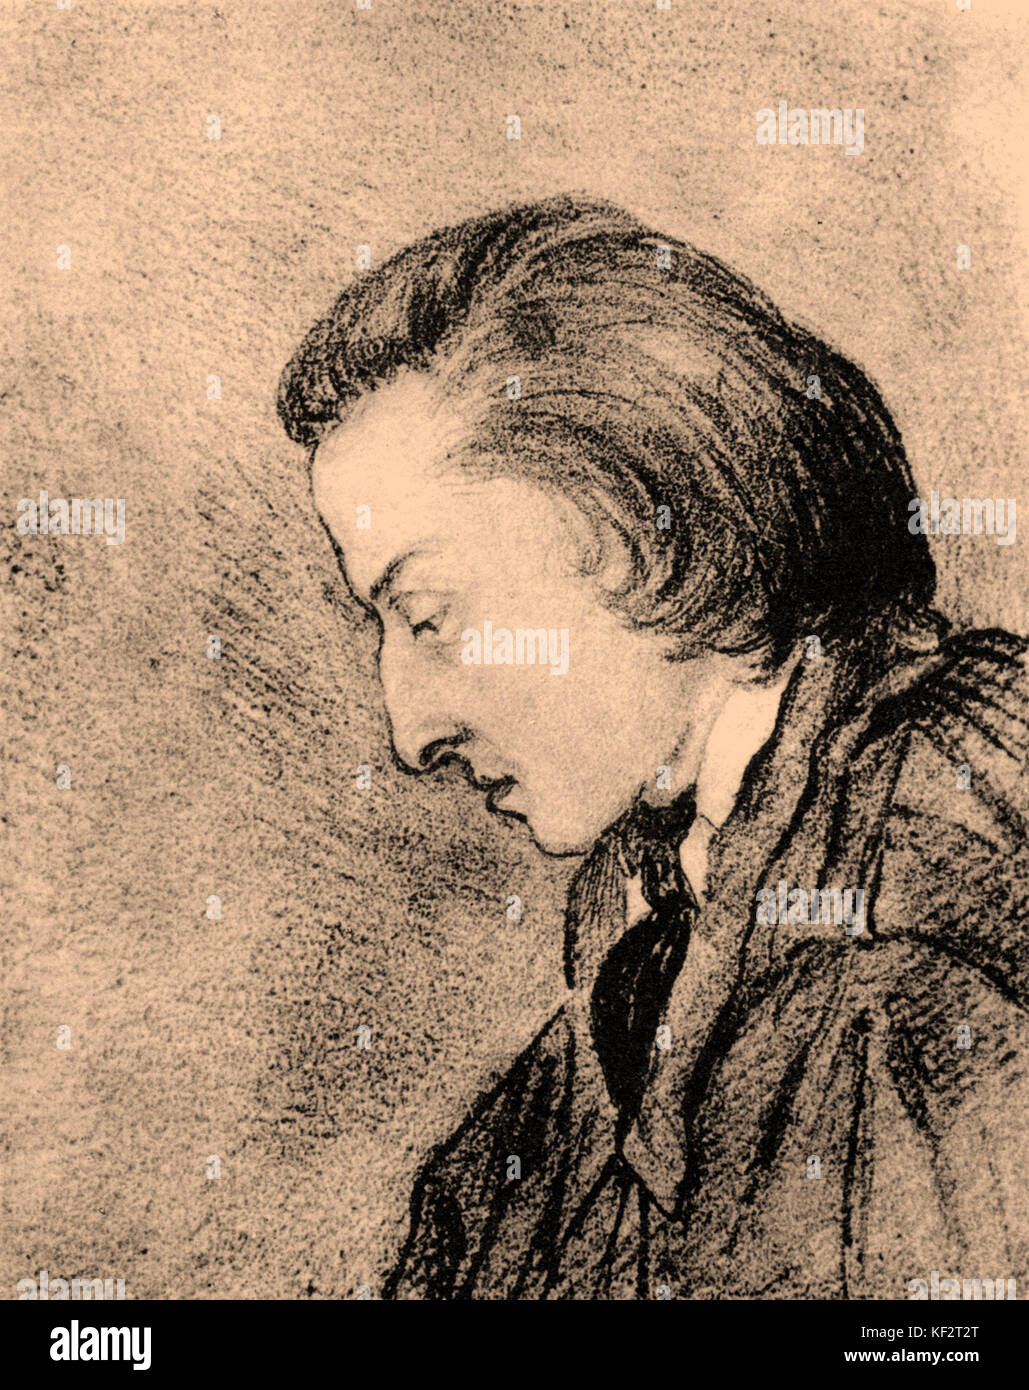 Profil de Frédéric Chopin, portrait par George Sand. Dessin. Le compositeur polonais Frédéric Chopin (1810-1849). Banque D'Images